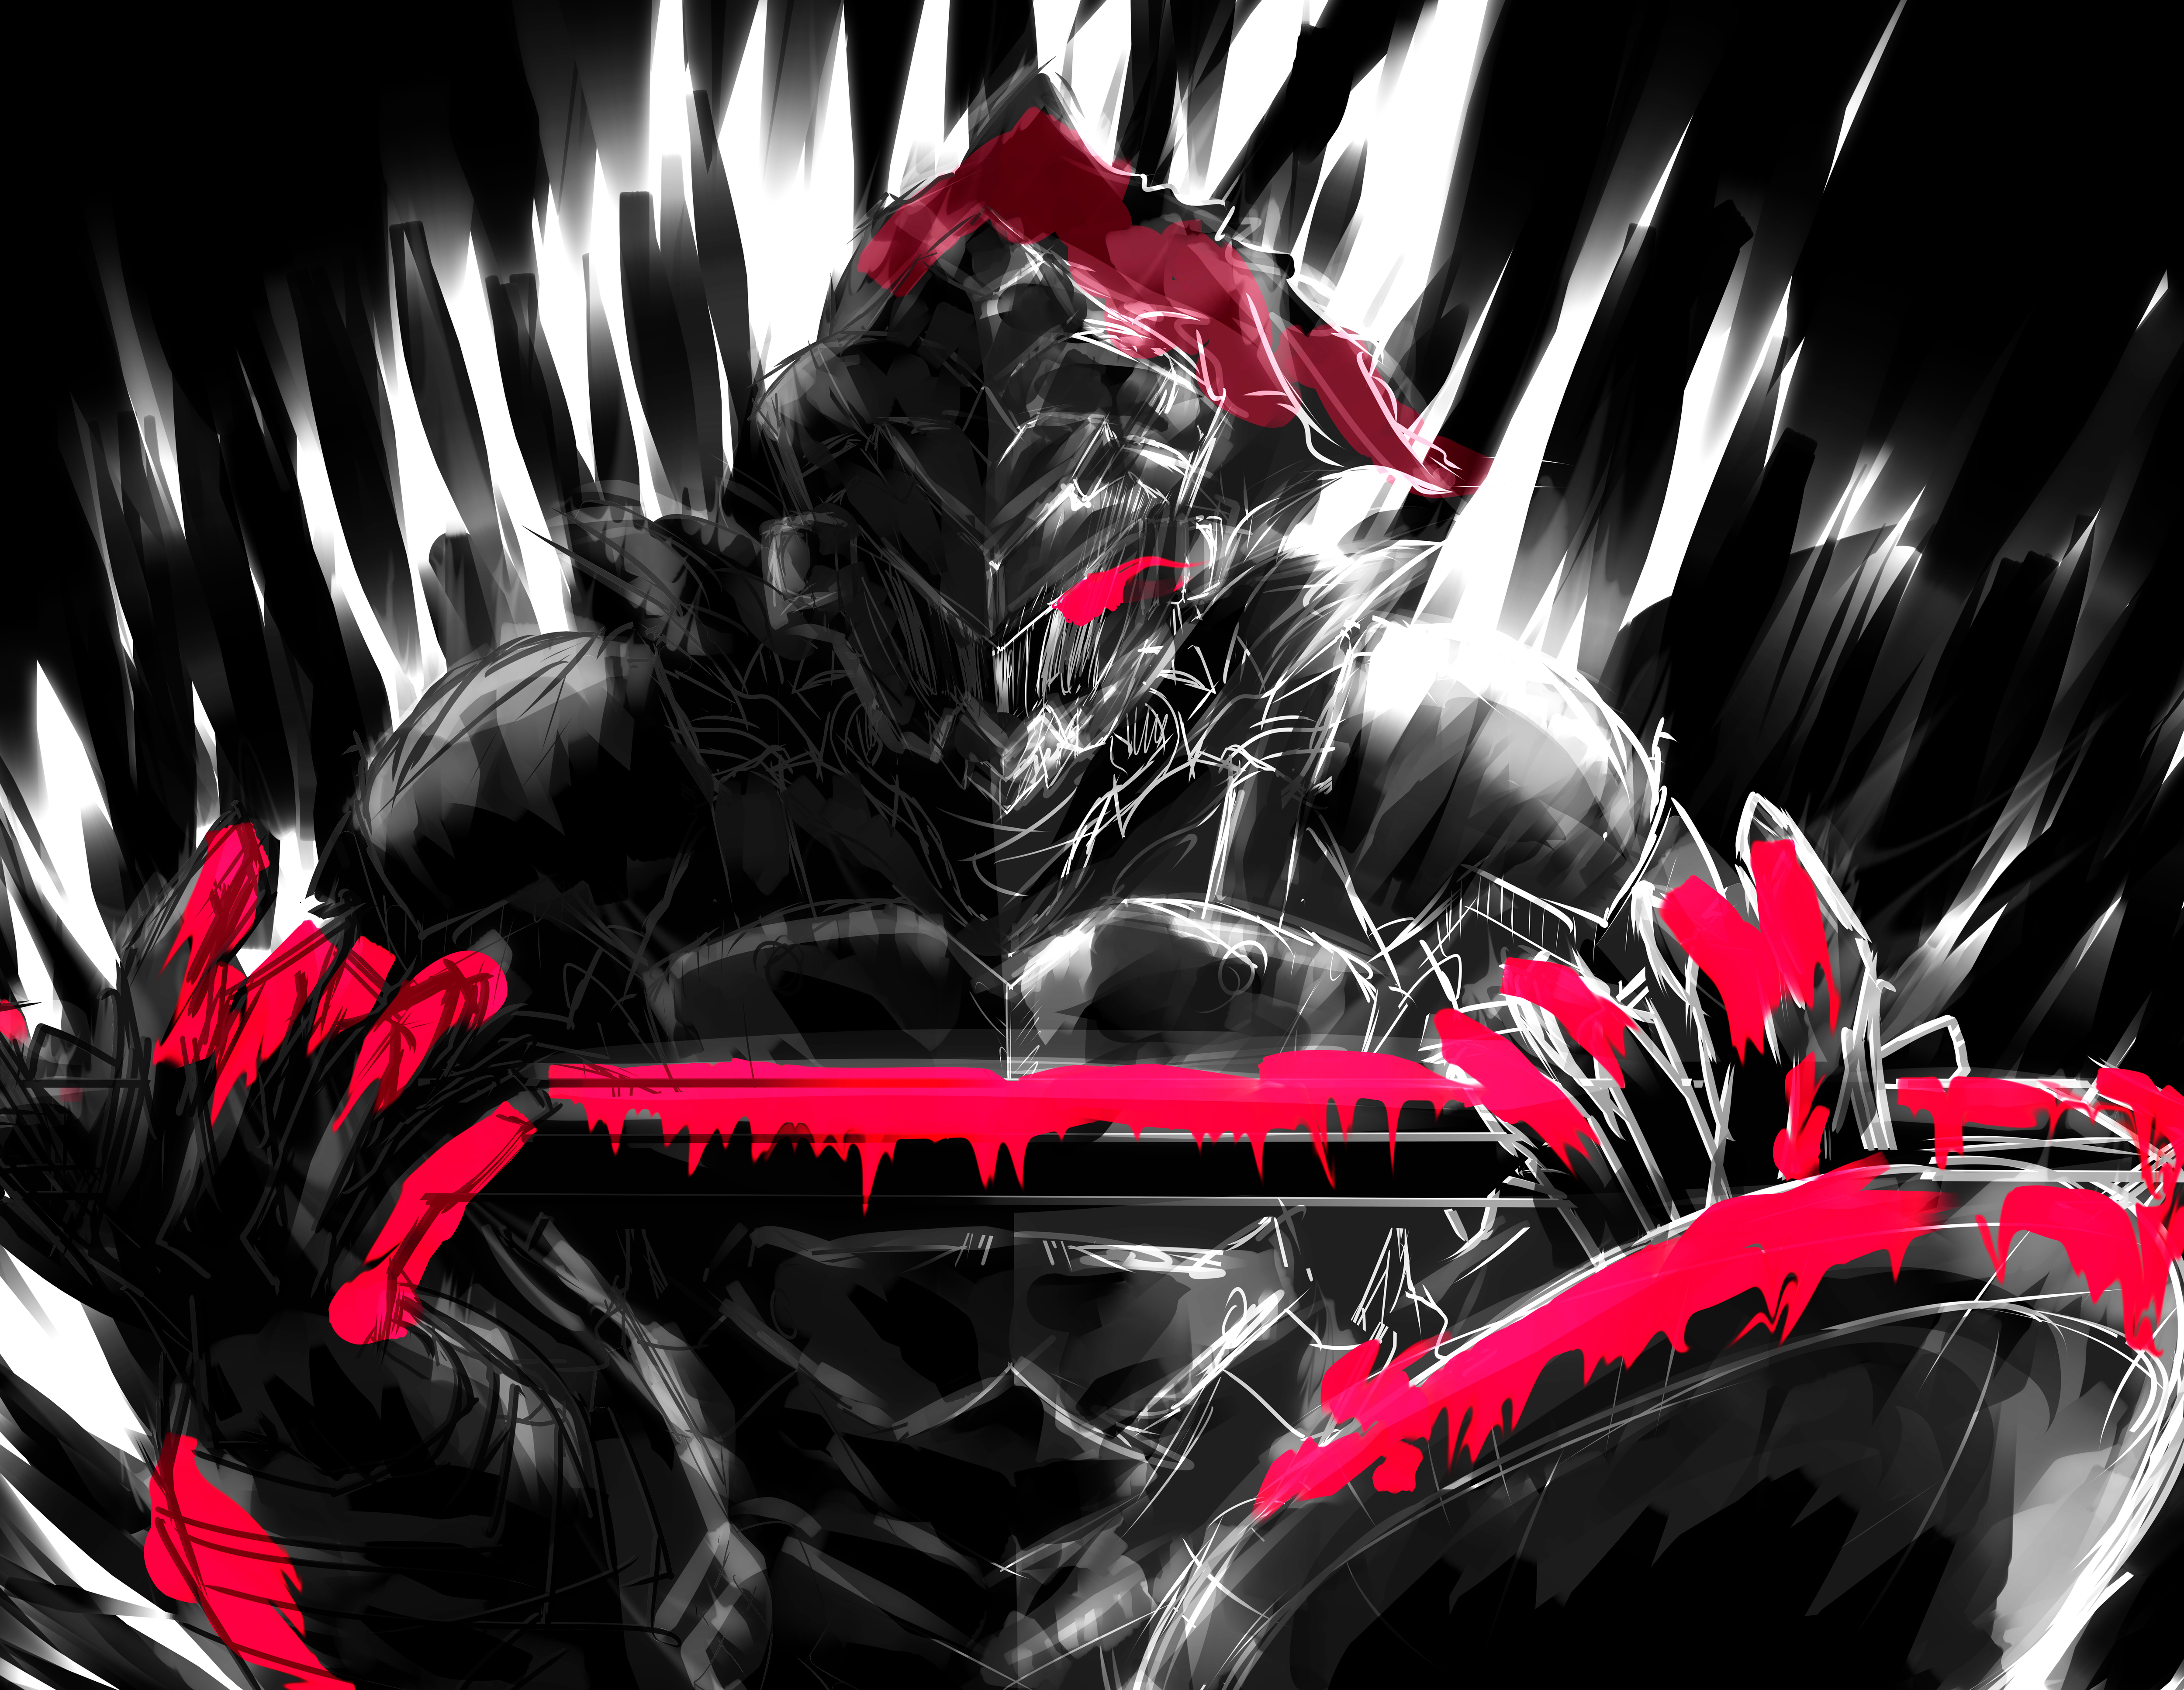 Goblin Slayer 4k Ultra HD Wallpaper by 未紗 夜村（みさ よむら）